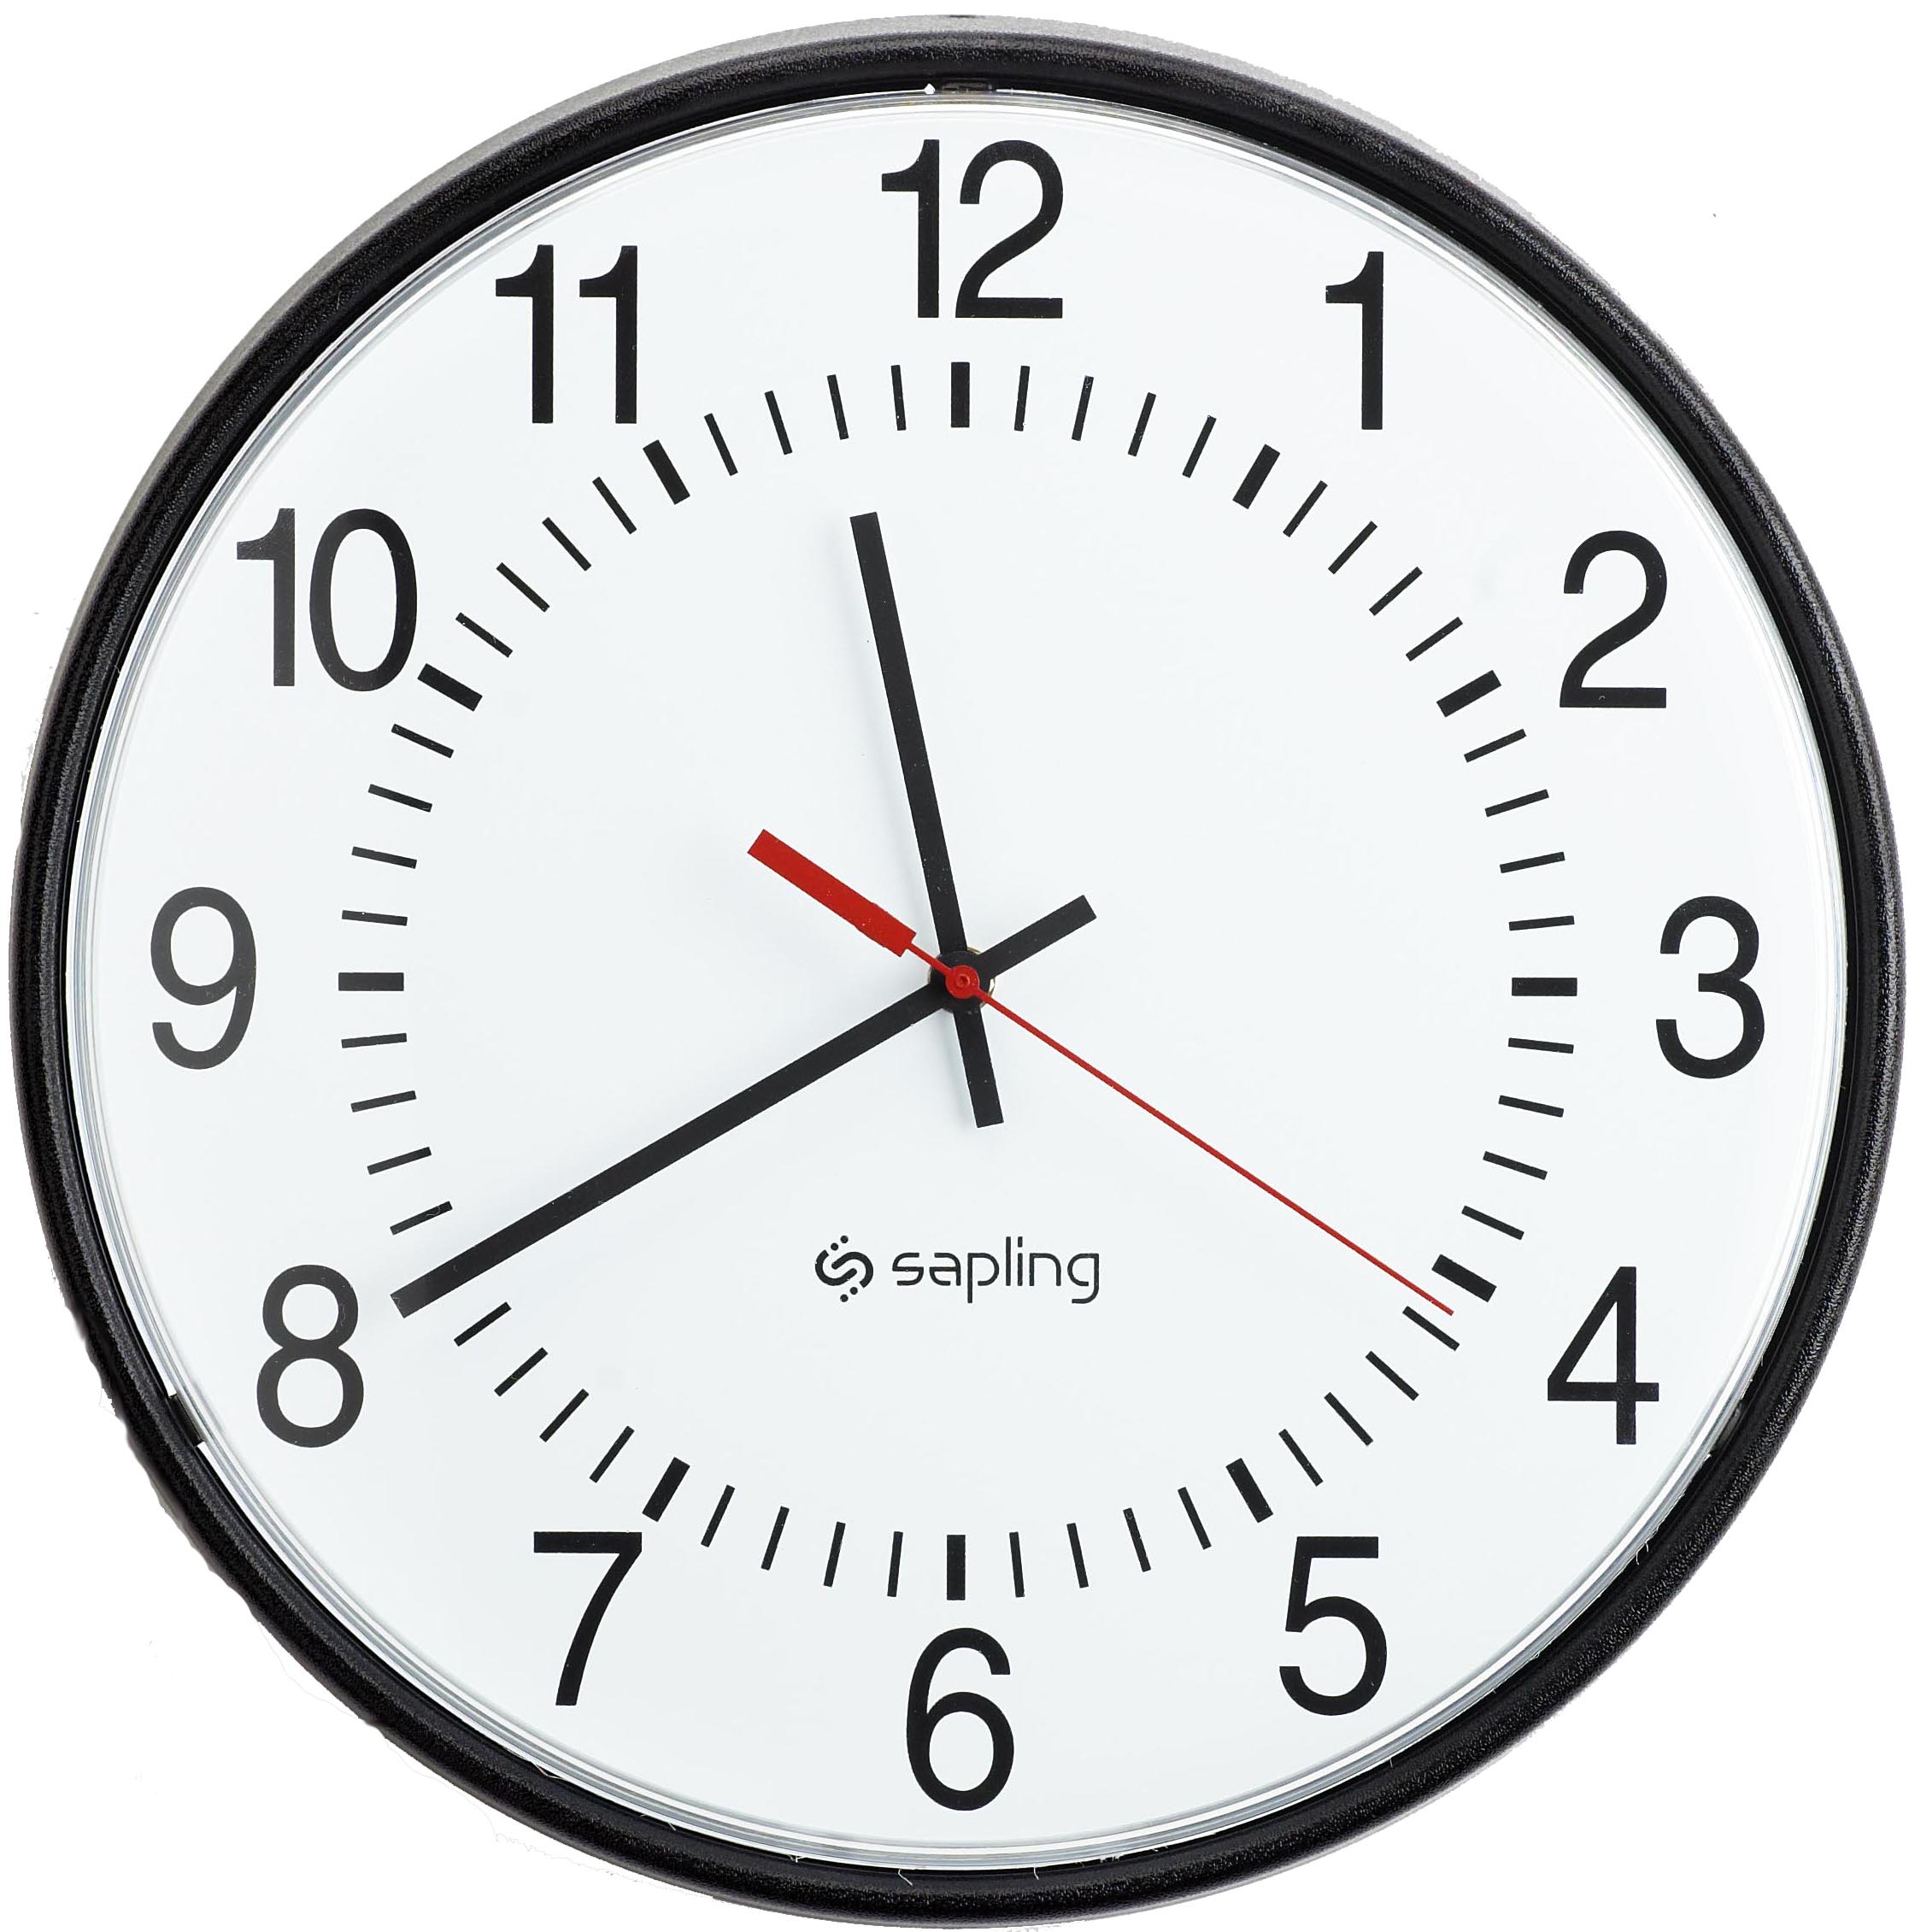 Часы показывающие разное время. Аналоговые часы. Часы со стрелками. Изображение часов. Xfcs Ch cnhtjrfvb.